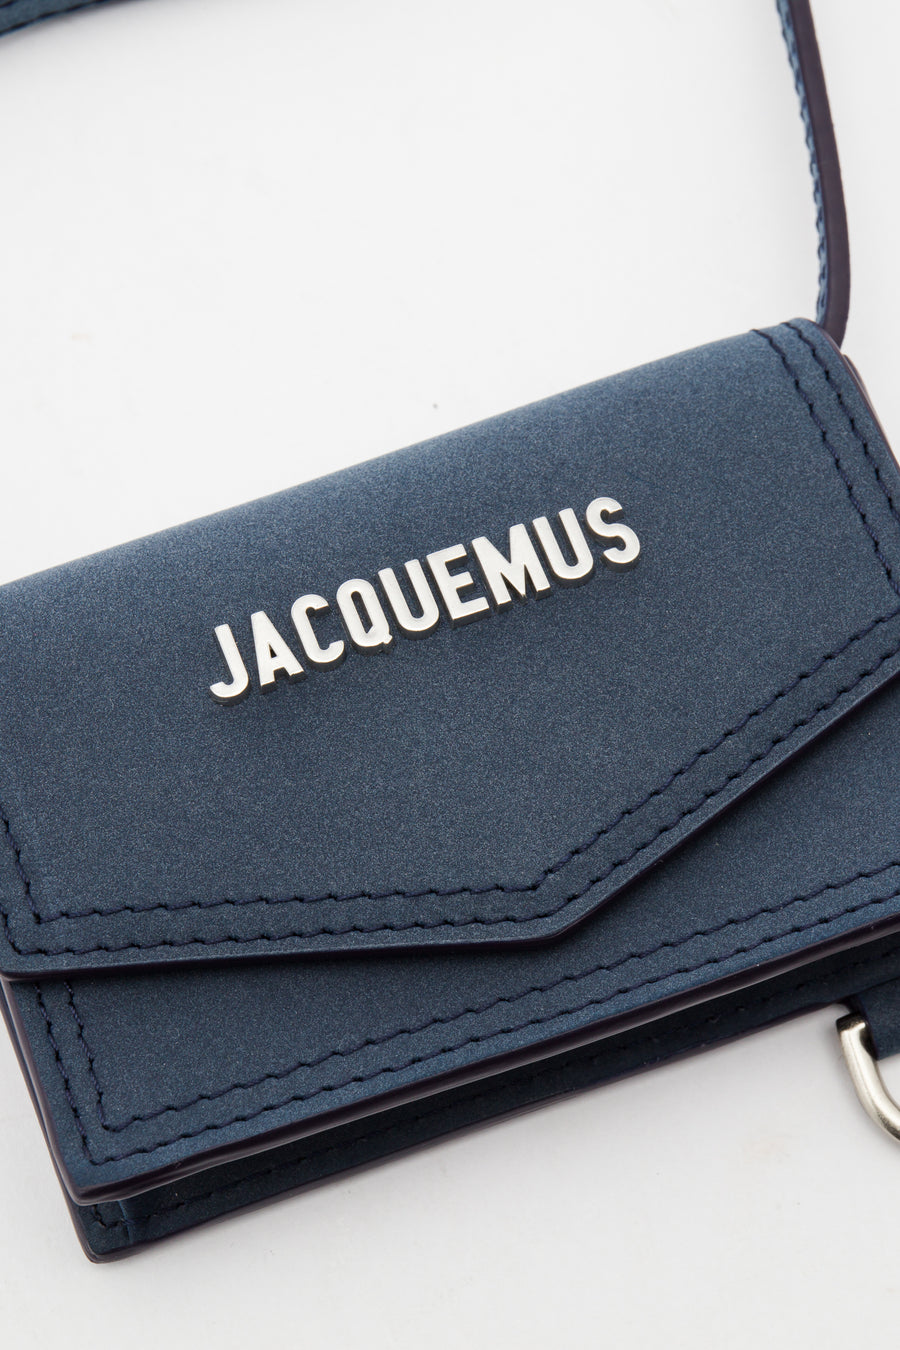 Jacquemus Le Porte Azur Strap Wallet